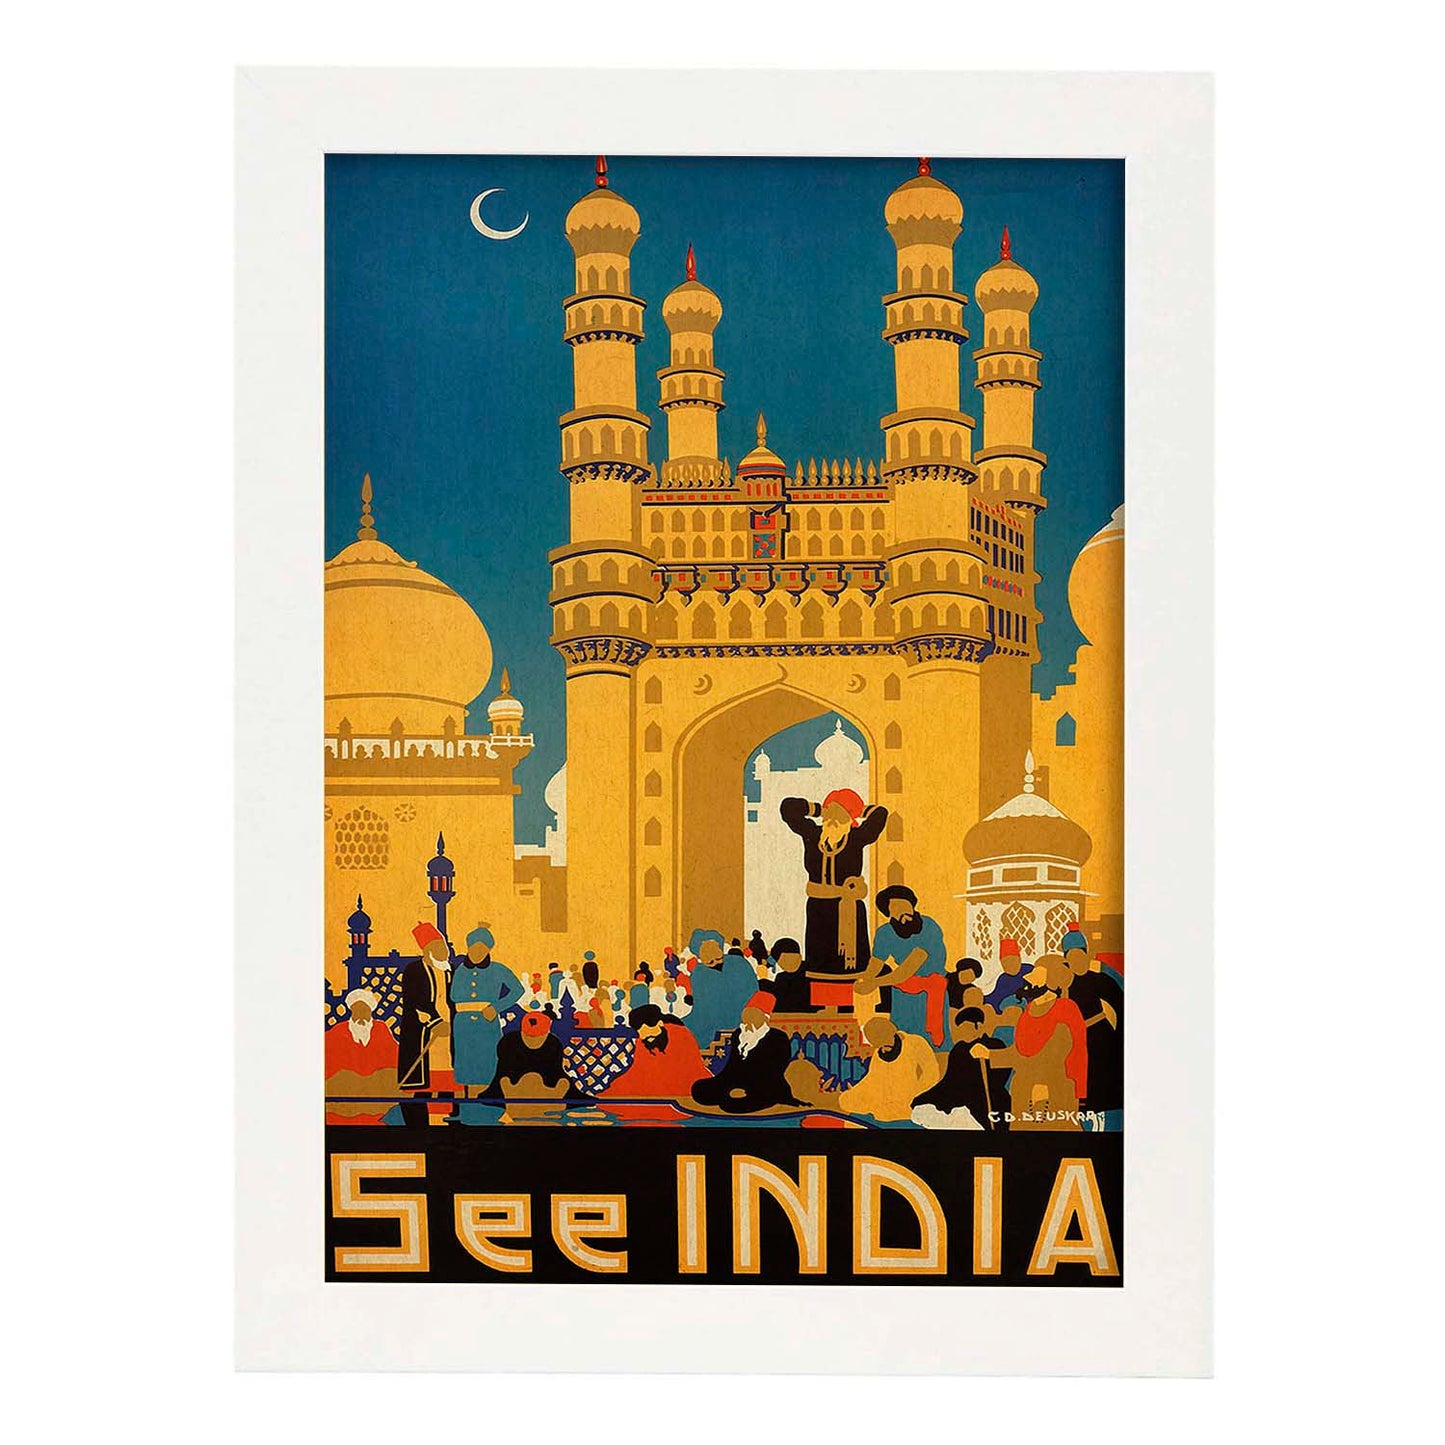 Poster vintage. Cartel vintage de Asia. Templo de India.-Artwork-Nacnic-A3-Marco Blanco-Nacnic Estudio SL